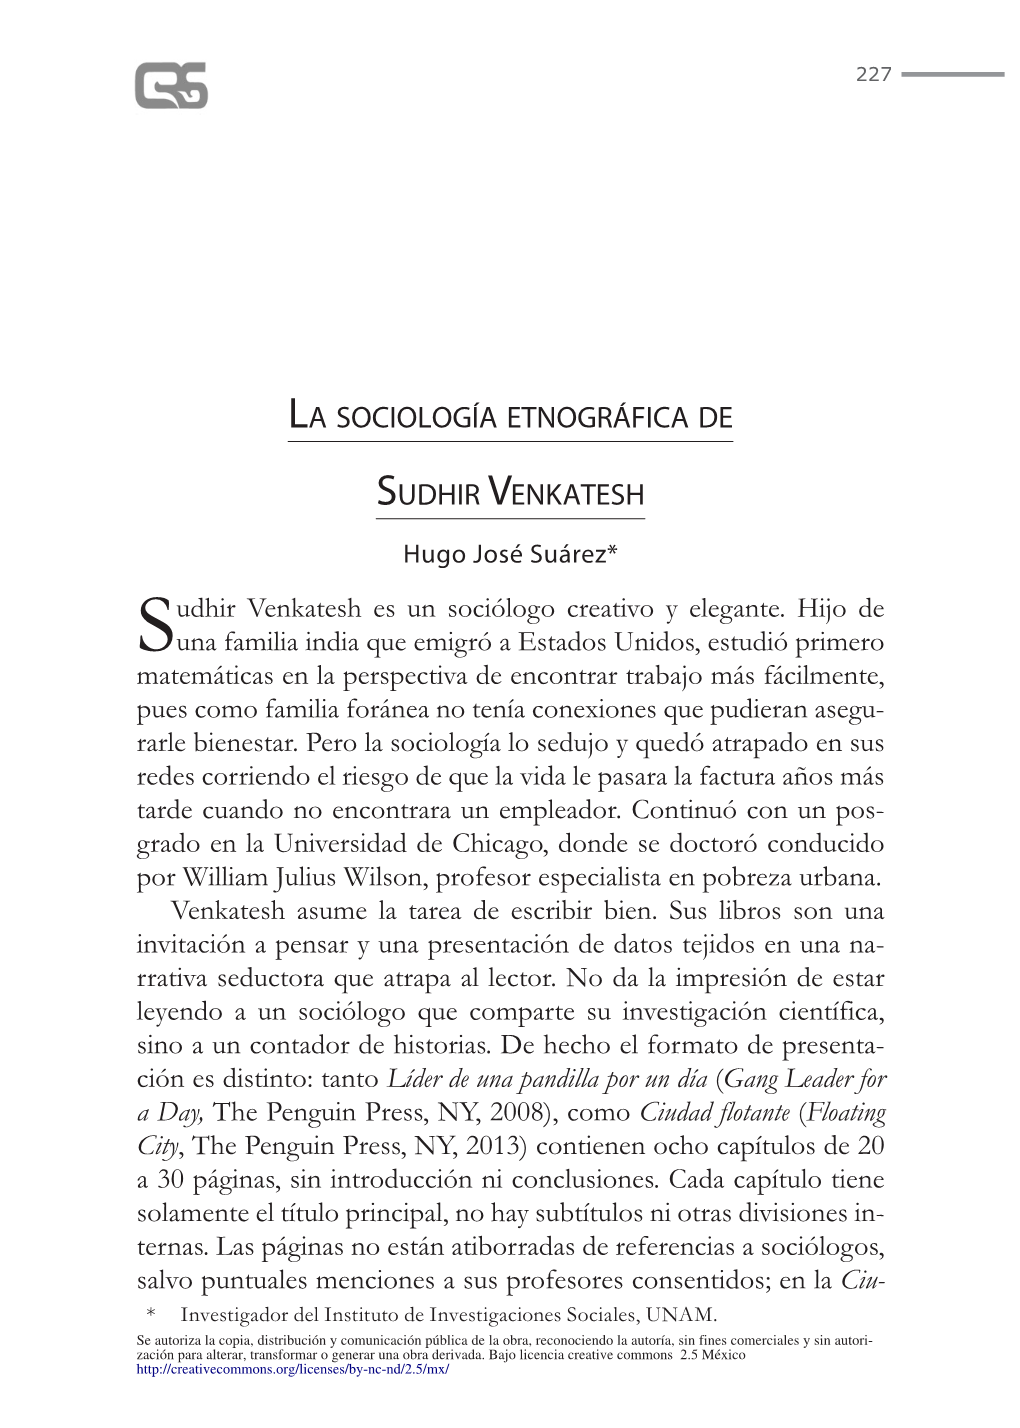 La Sociología Etnográfica De Sudhir Venkatesh 229